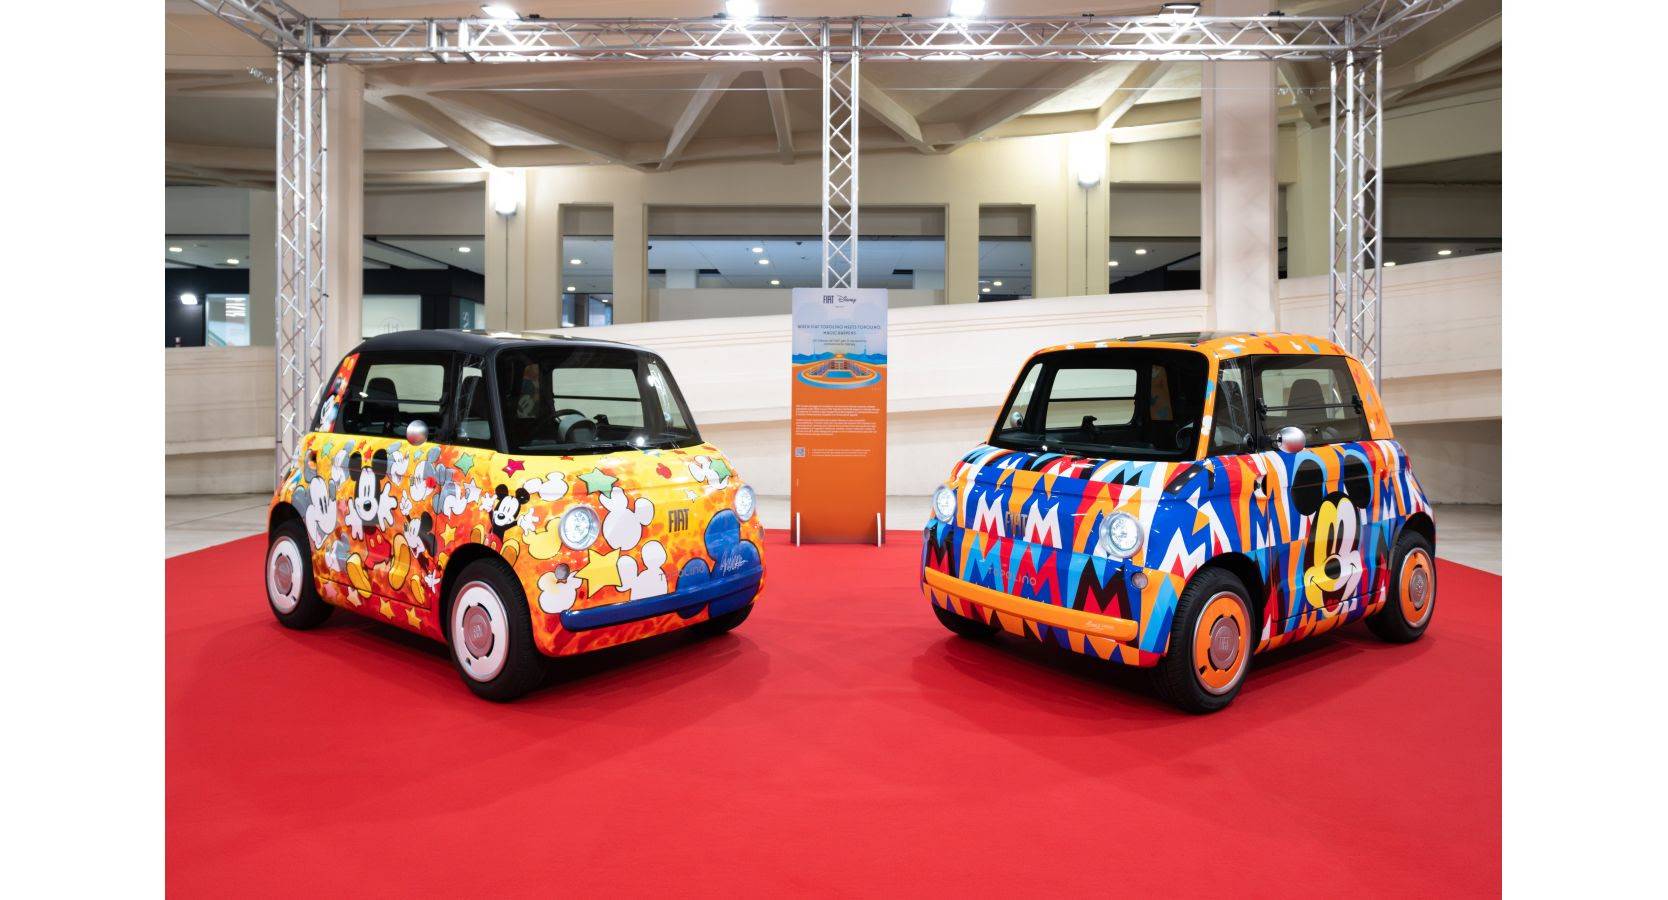 Le Fiat Topolino one-off dedicate a Mickey Mouse colorano la rampa nord del Lingotto: un’iniziativa all’insegna della creatività e della cultura pop